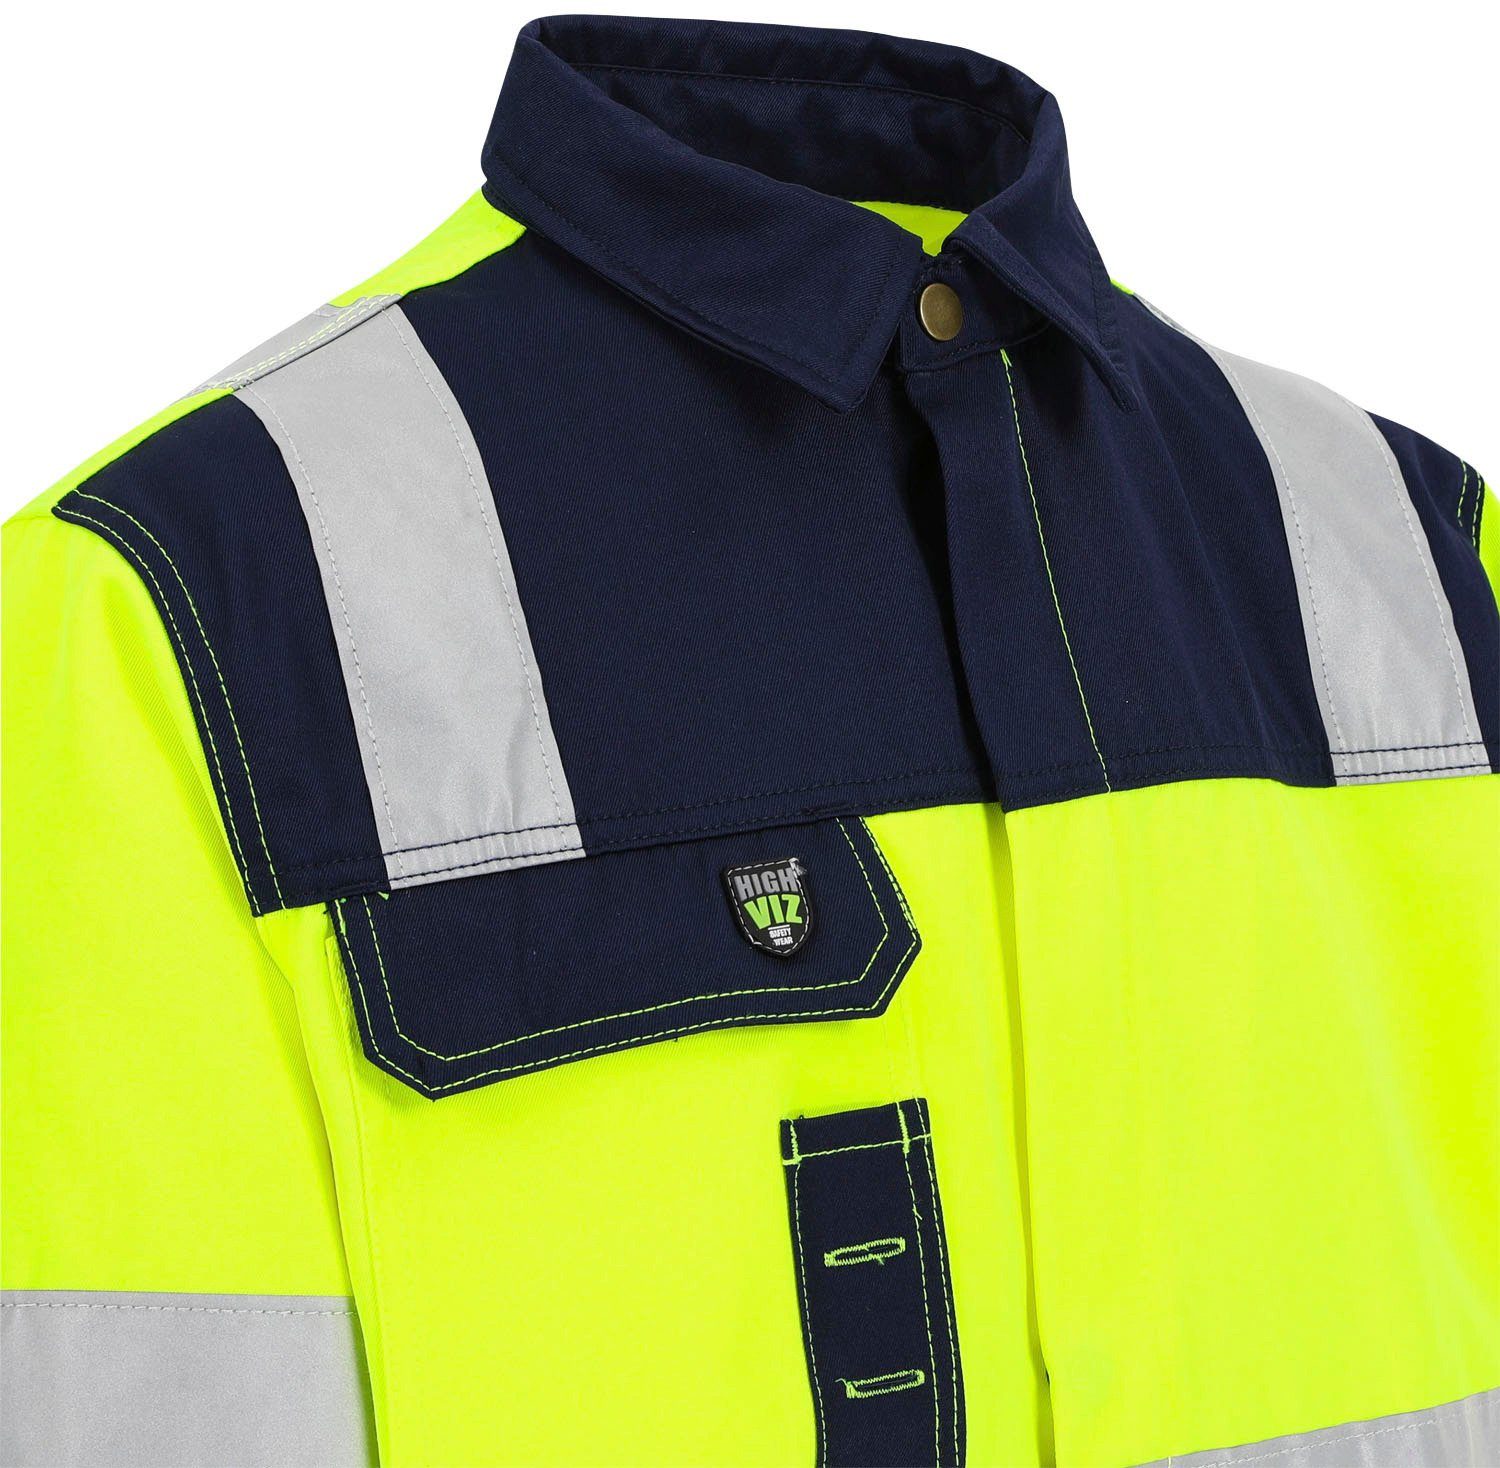 Bänder Arbeitsjacke reflektierende 5 Taschen, Herock 5cm Jacke Hochsichtbar Hydros gelb Hochwertig, Bündchen, eintellbare